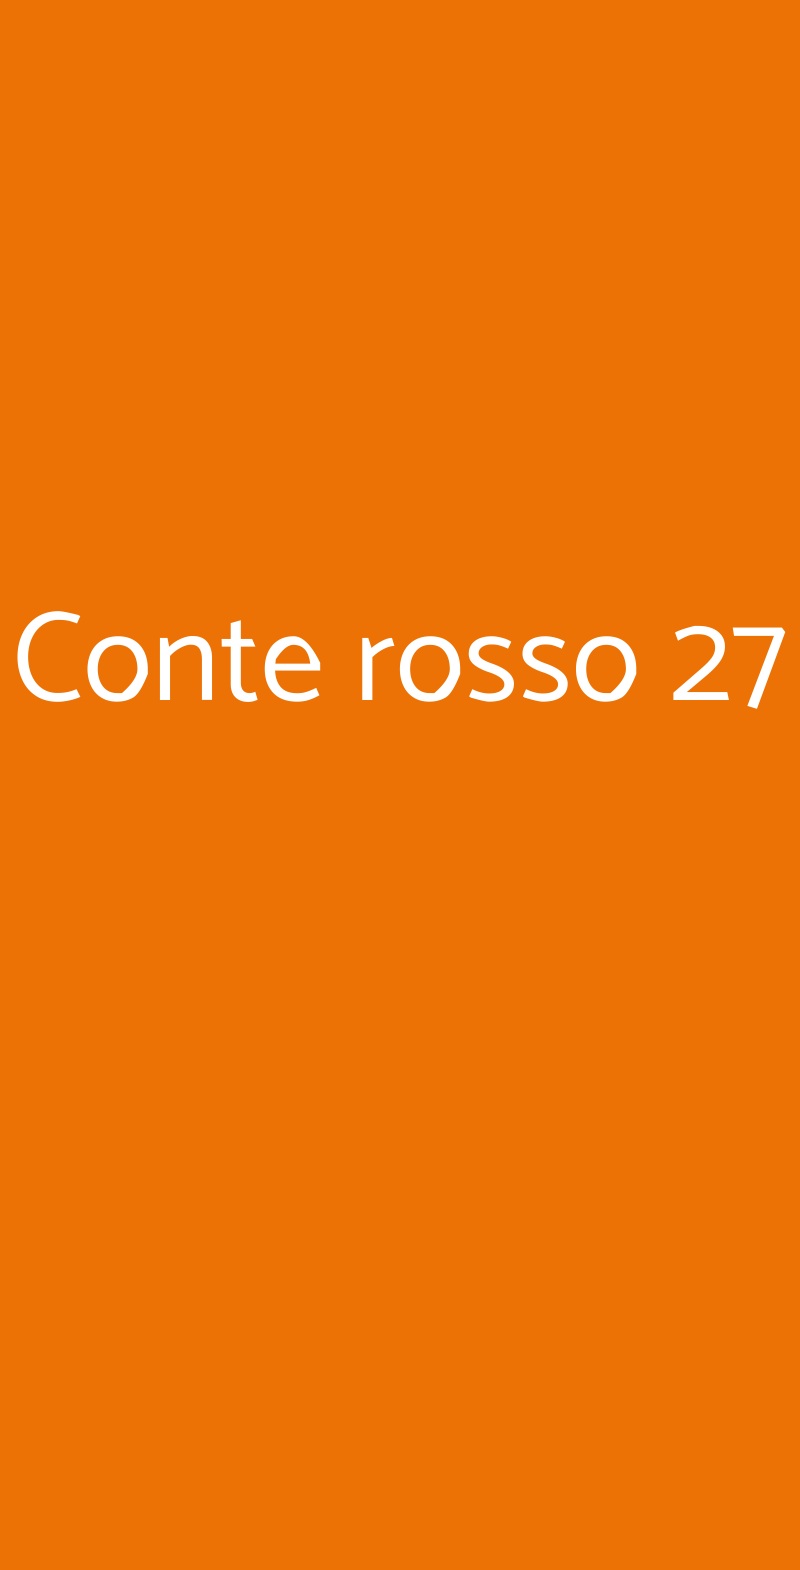 Conte rosso 27 Milano menù 1 pagina